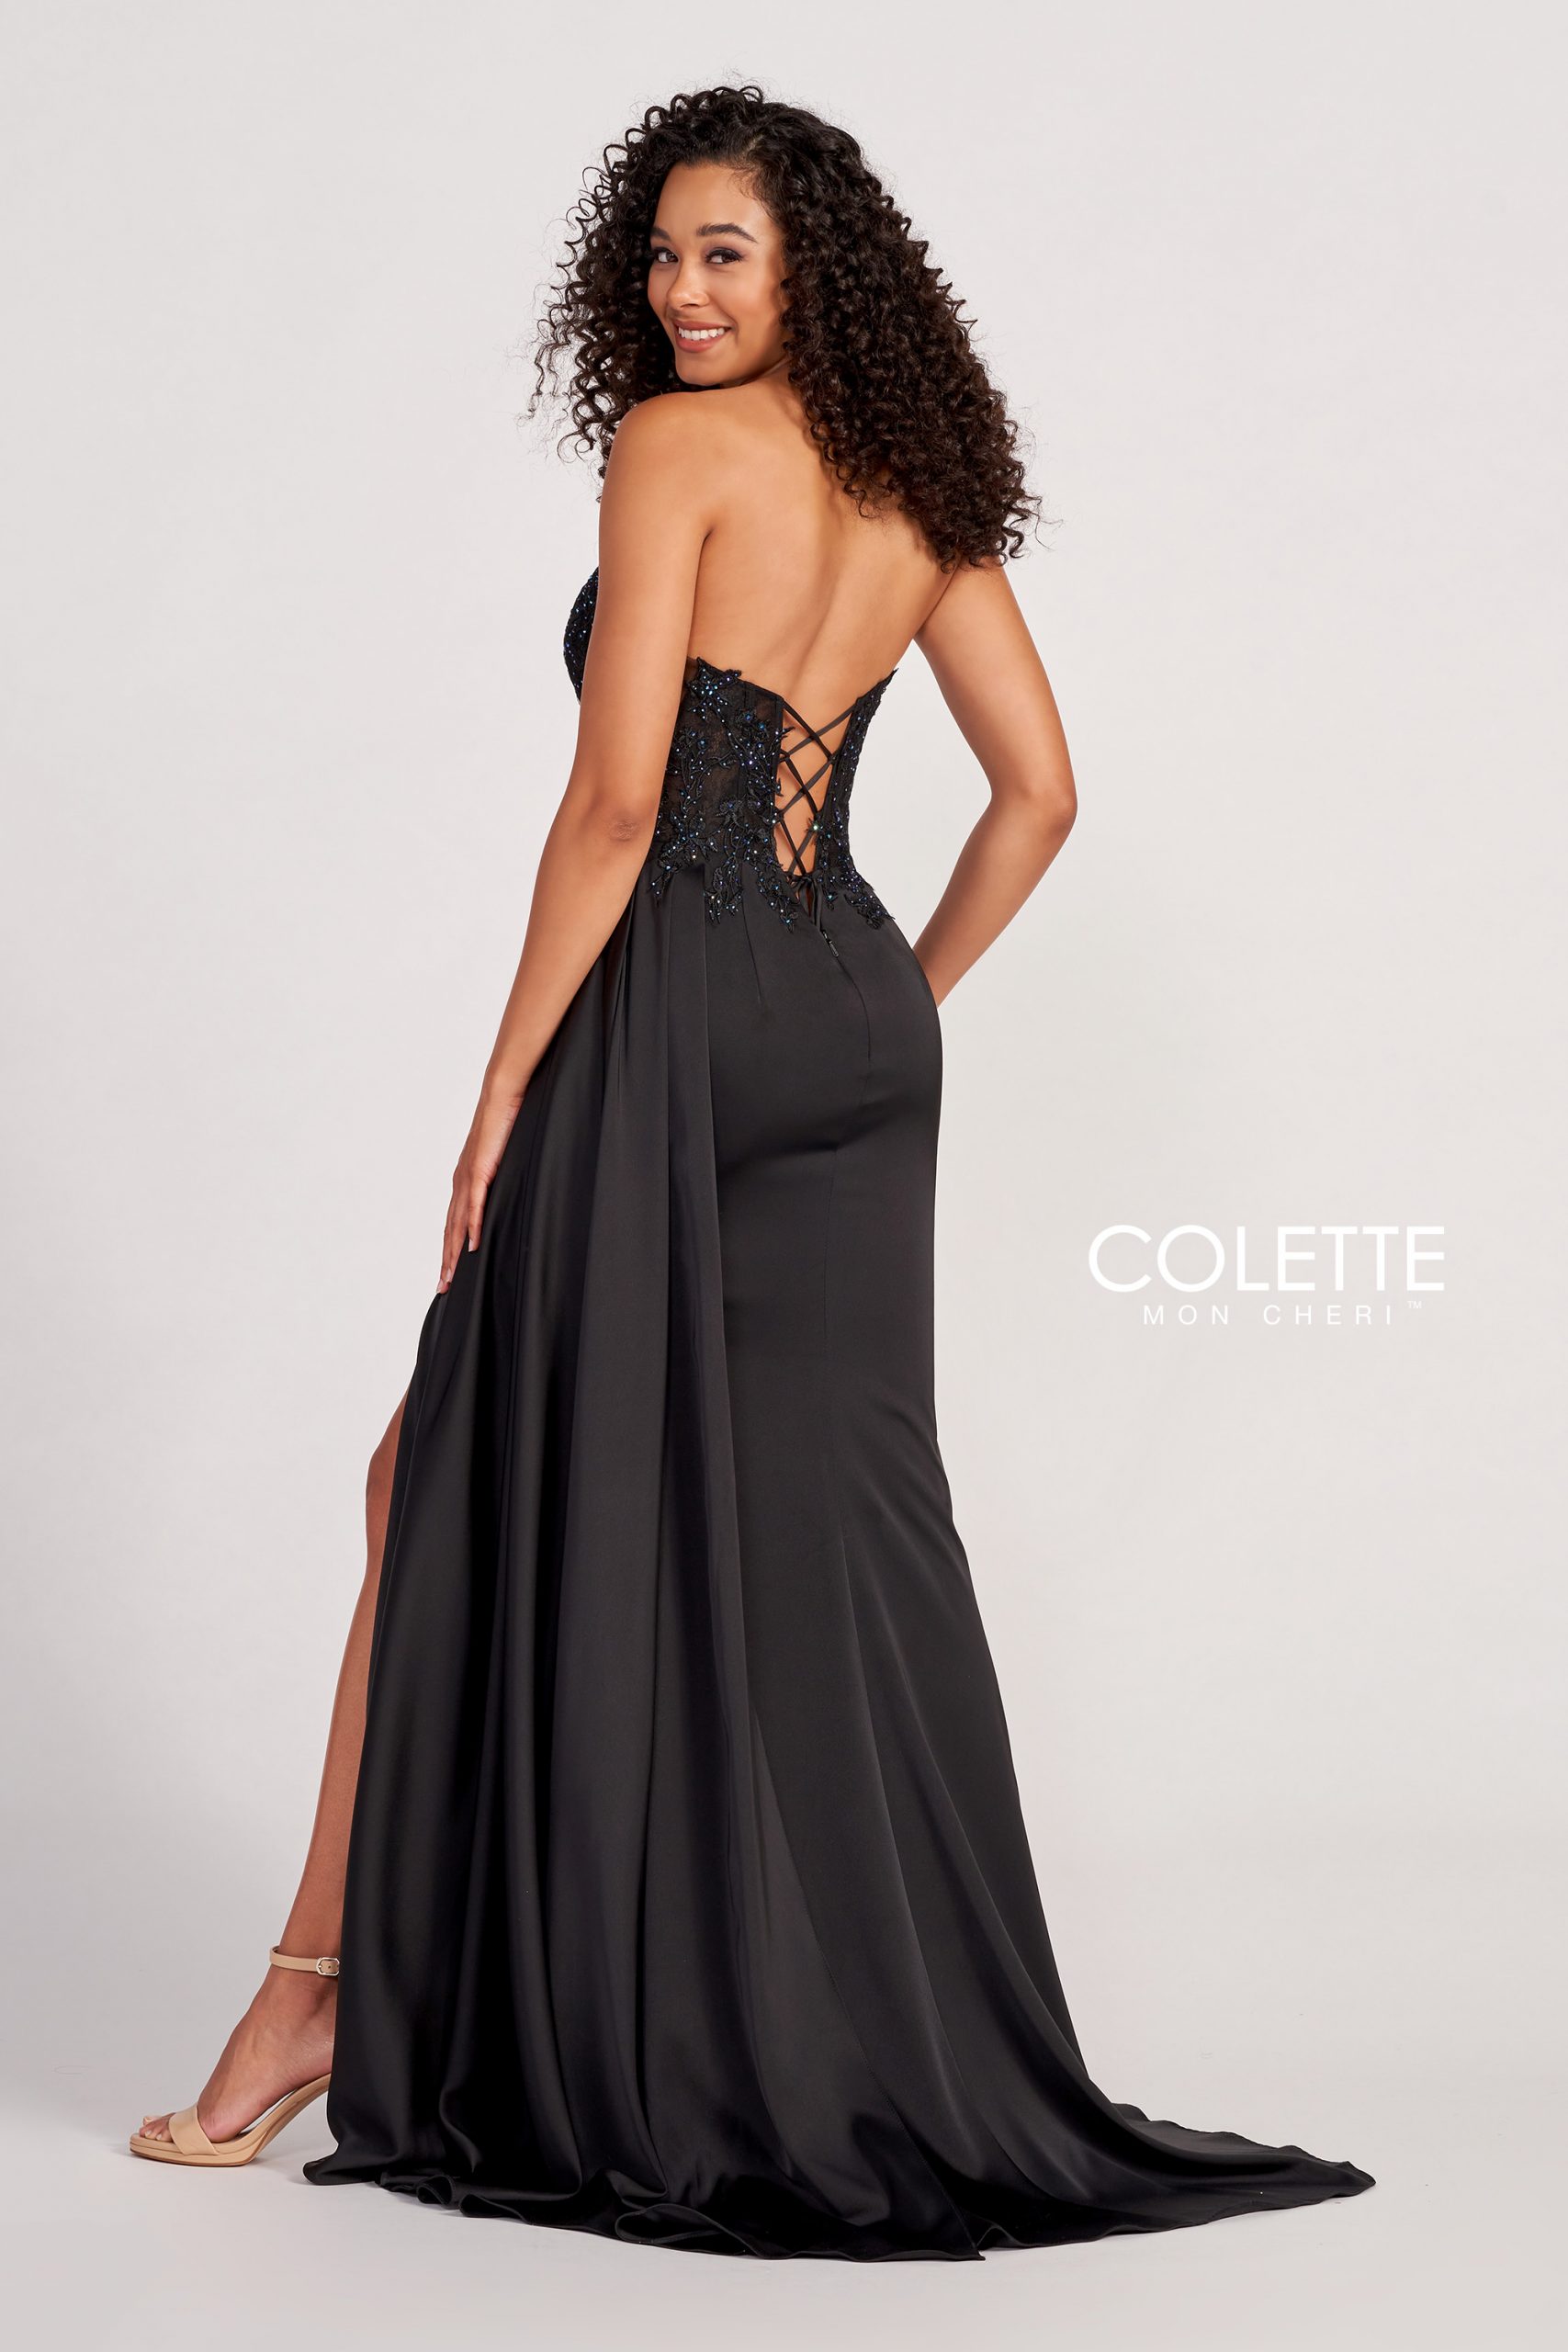 CL2053 - Colette dresses available at Lisa's Bridal Salon